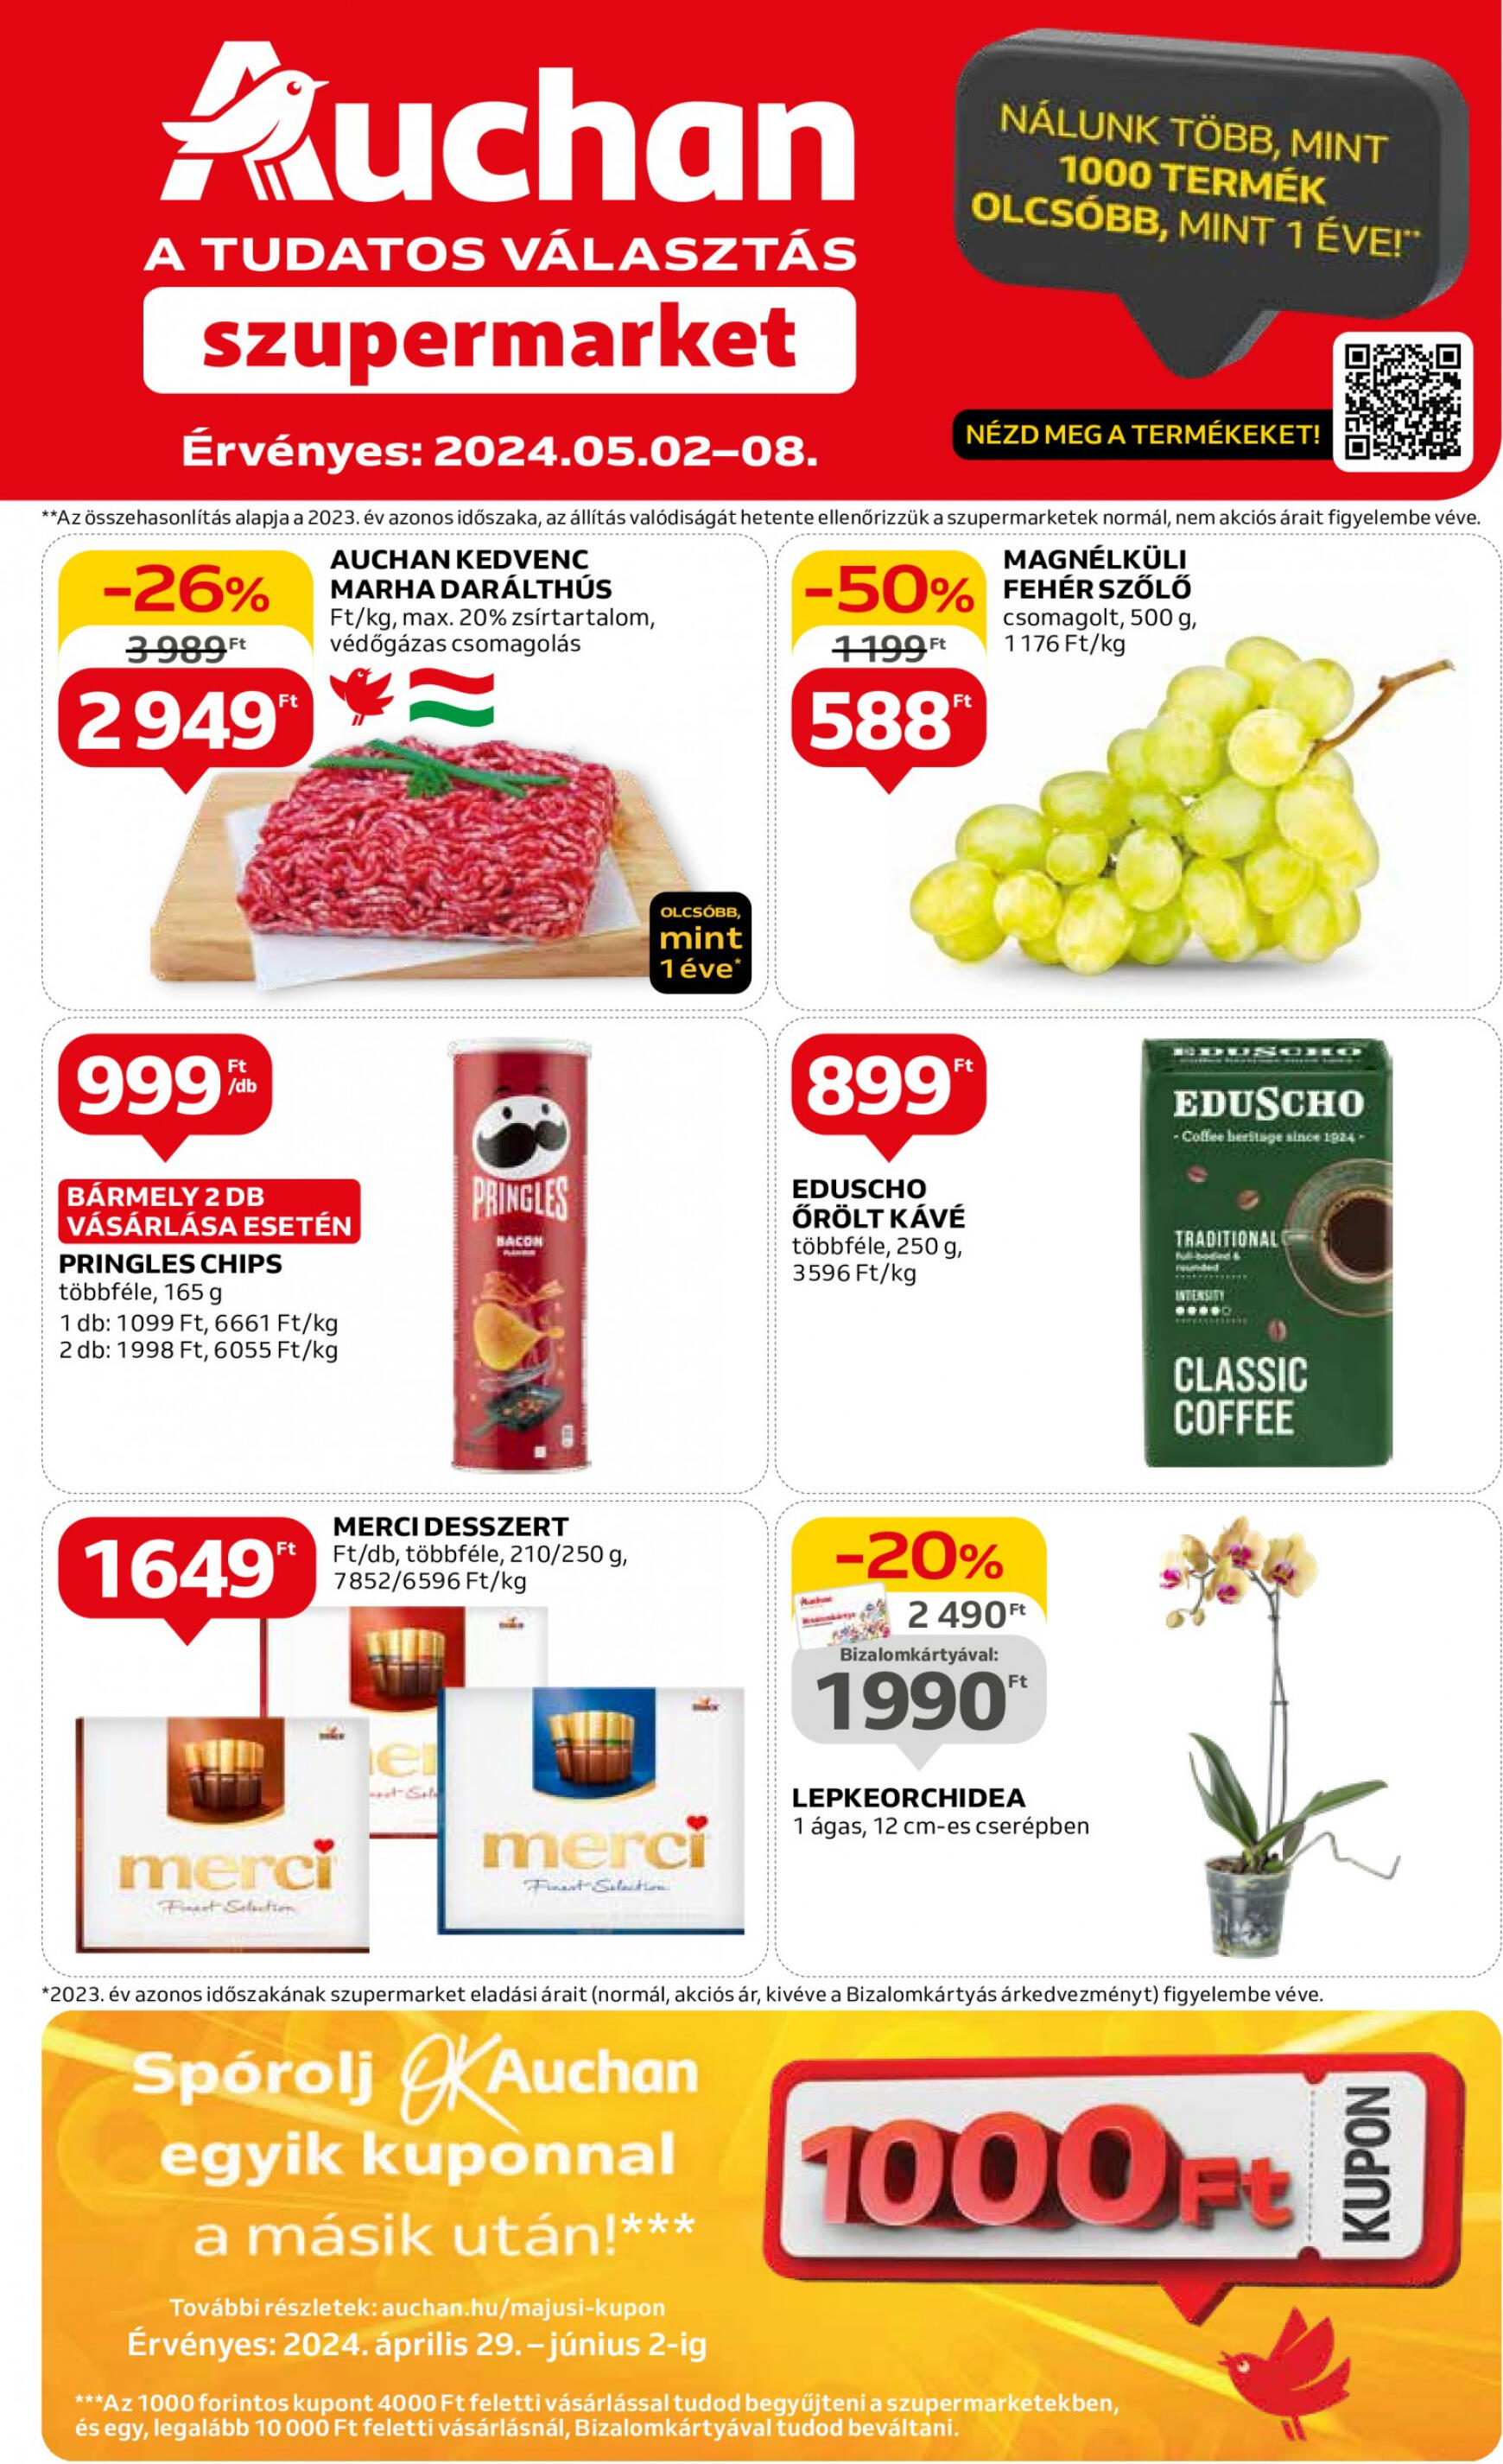 auchan - Aktuális újság Auchan szupermarket 05.02. - 05.08. - page: 1